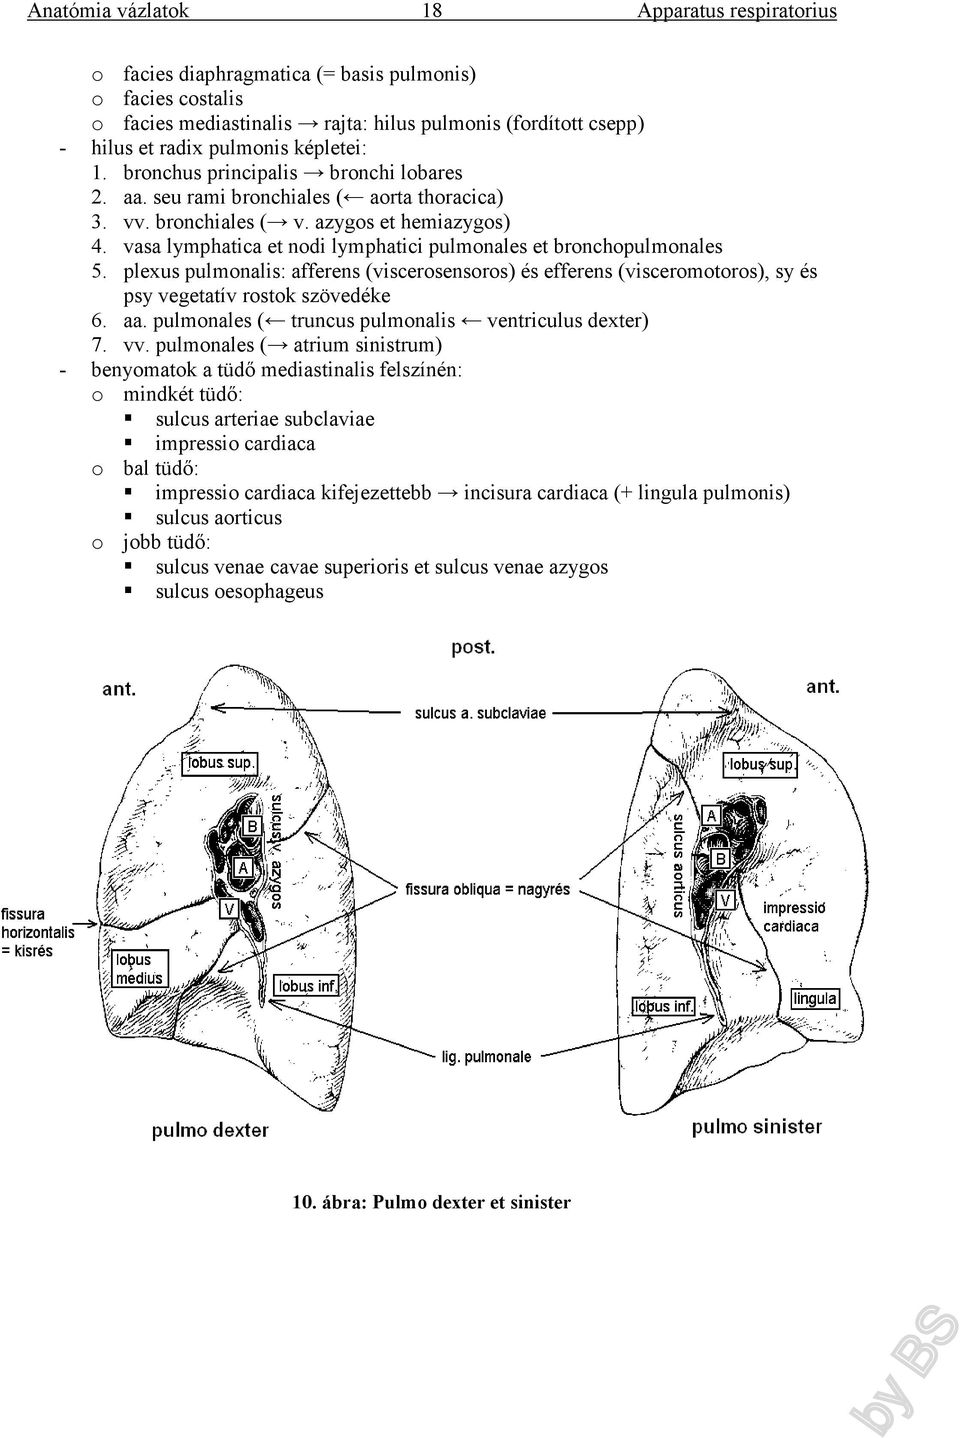 vasa lymphatica et nodi lymphatici pulmonales et bronchopulmonales 5. plexus pulmonalis: afferens (viscerosensoros) és efferens (visceromotoros), sy és psy vegetatív rostok szövedéke 6. aa.